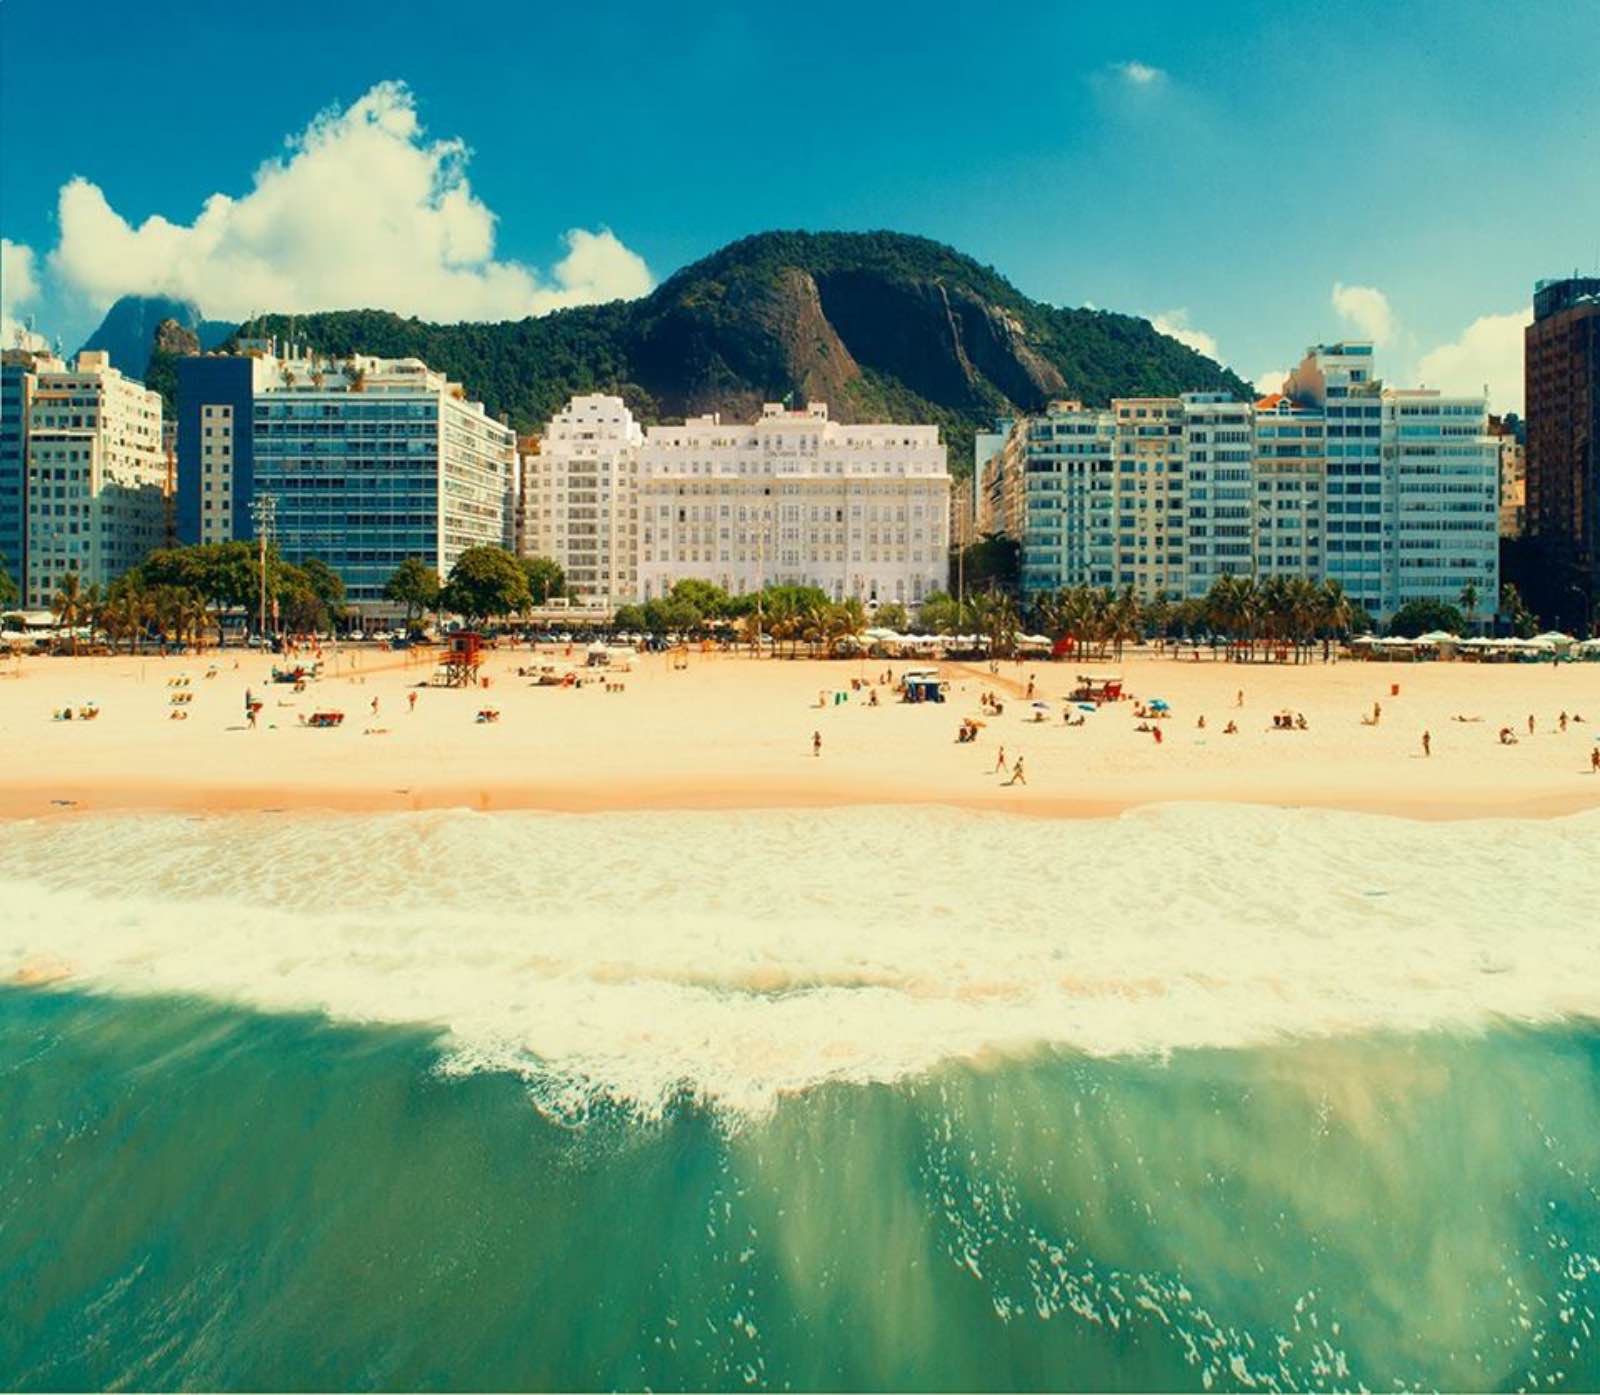 Belmond Copacabana Palace beach facing